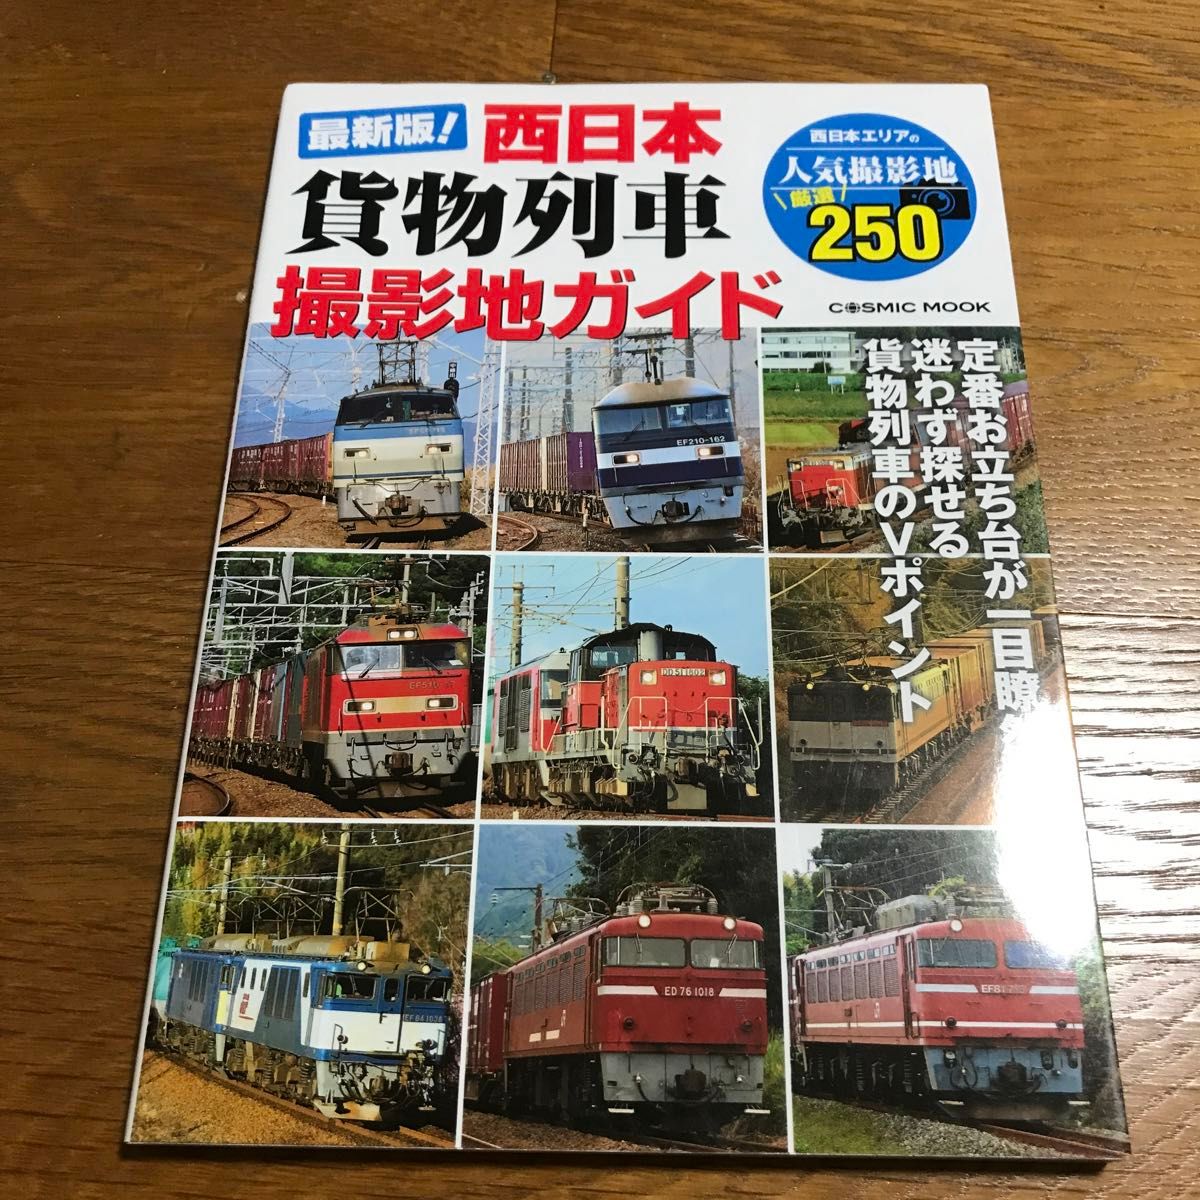 最新版! 西日本貨物列車撮影地ガイド 定番お立ち台が一目瞭然!